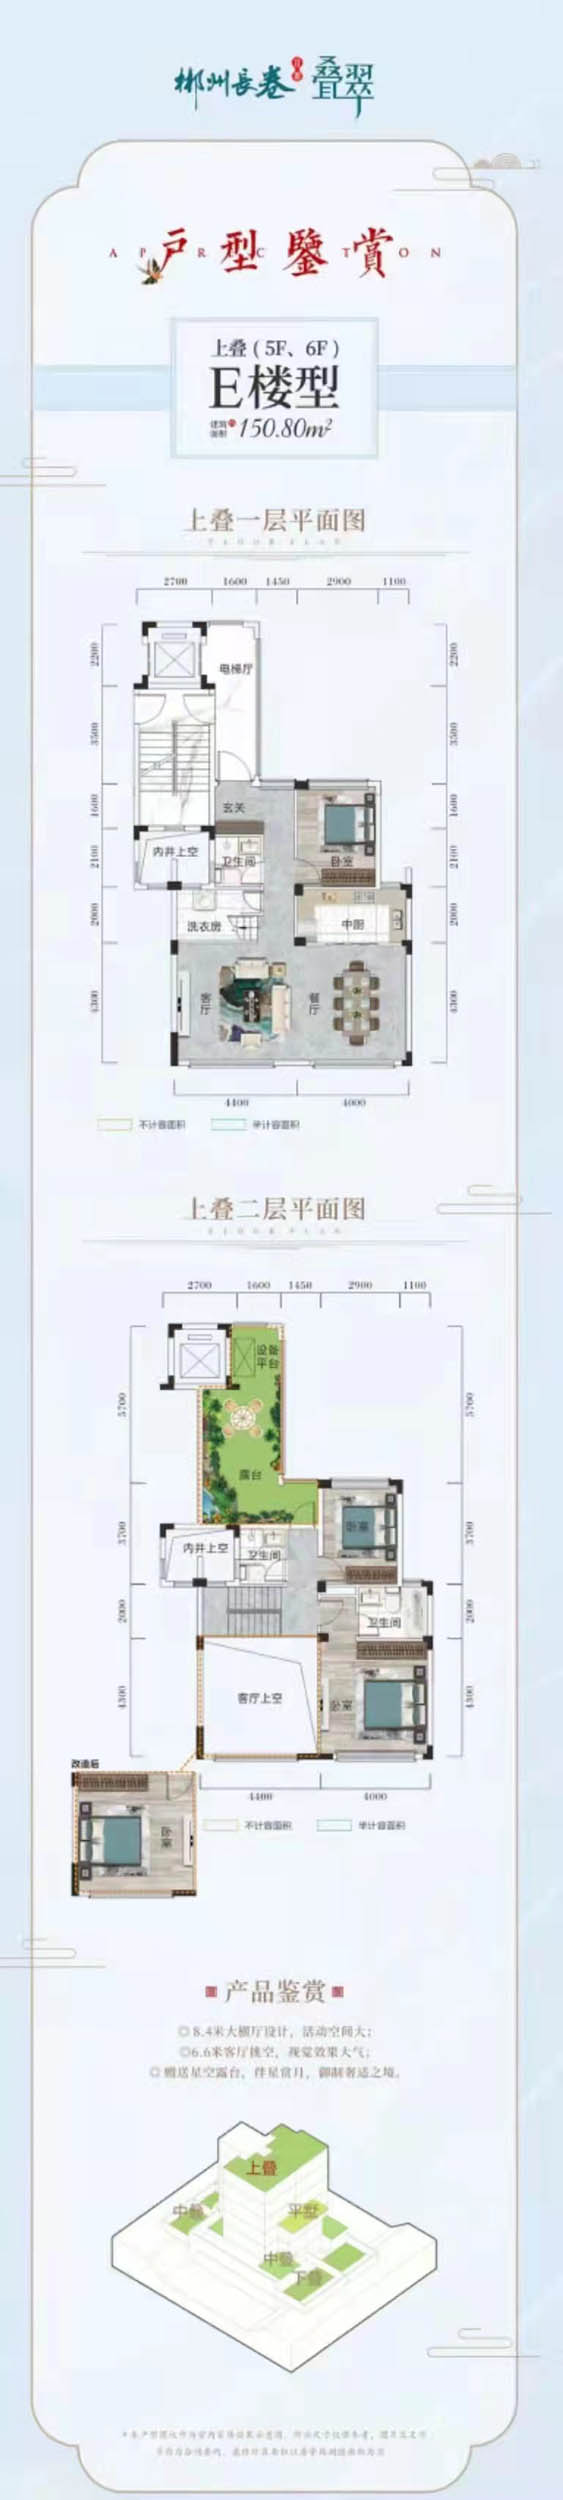 郴州苏仙区长卷二期为您提供该项目E楼型上叠图片鉴赏